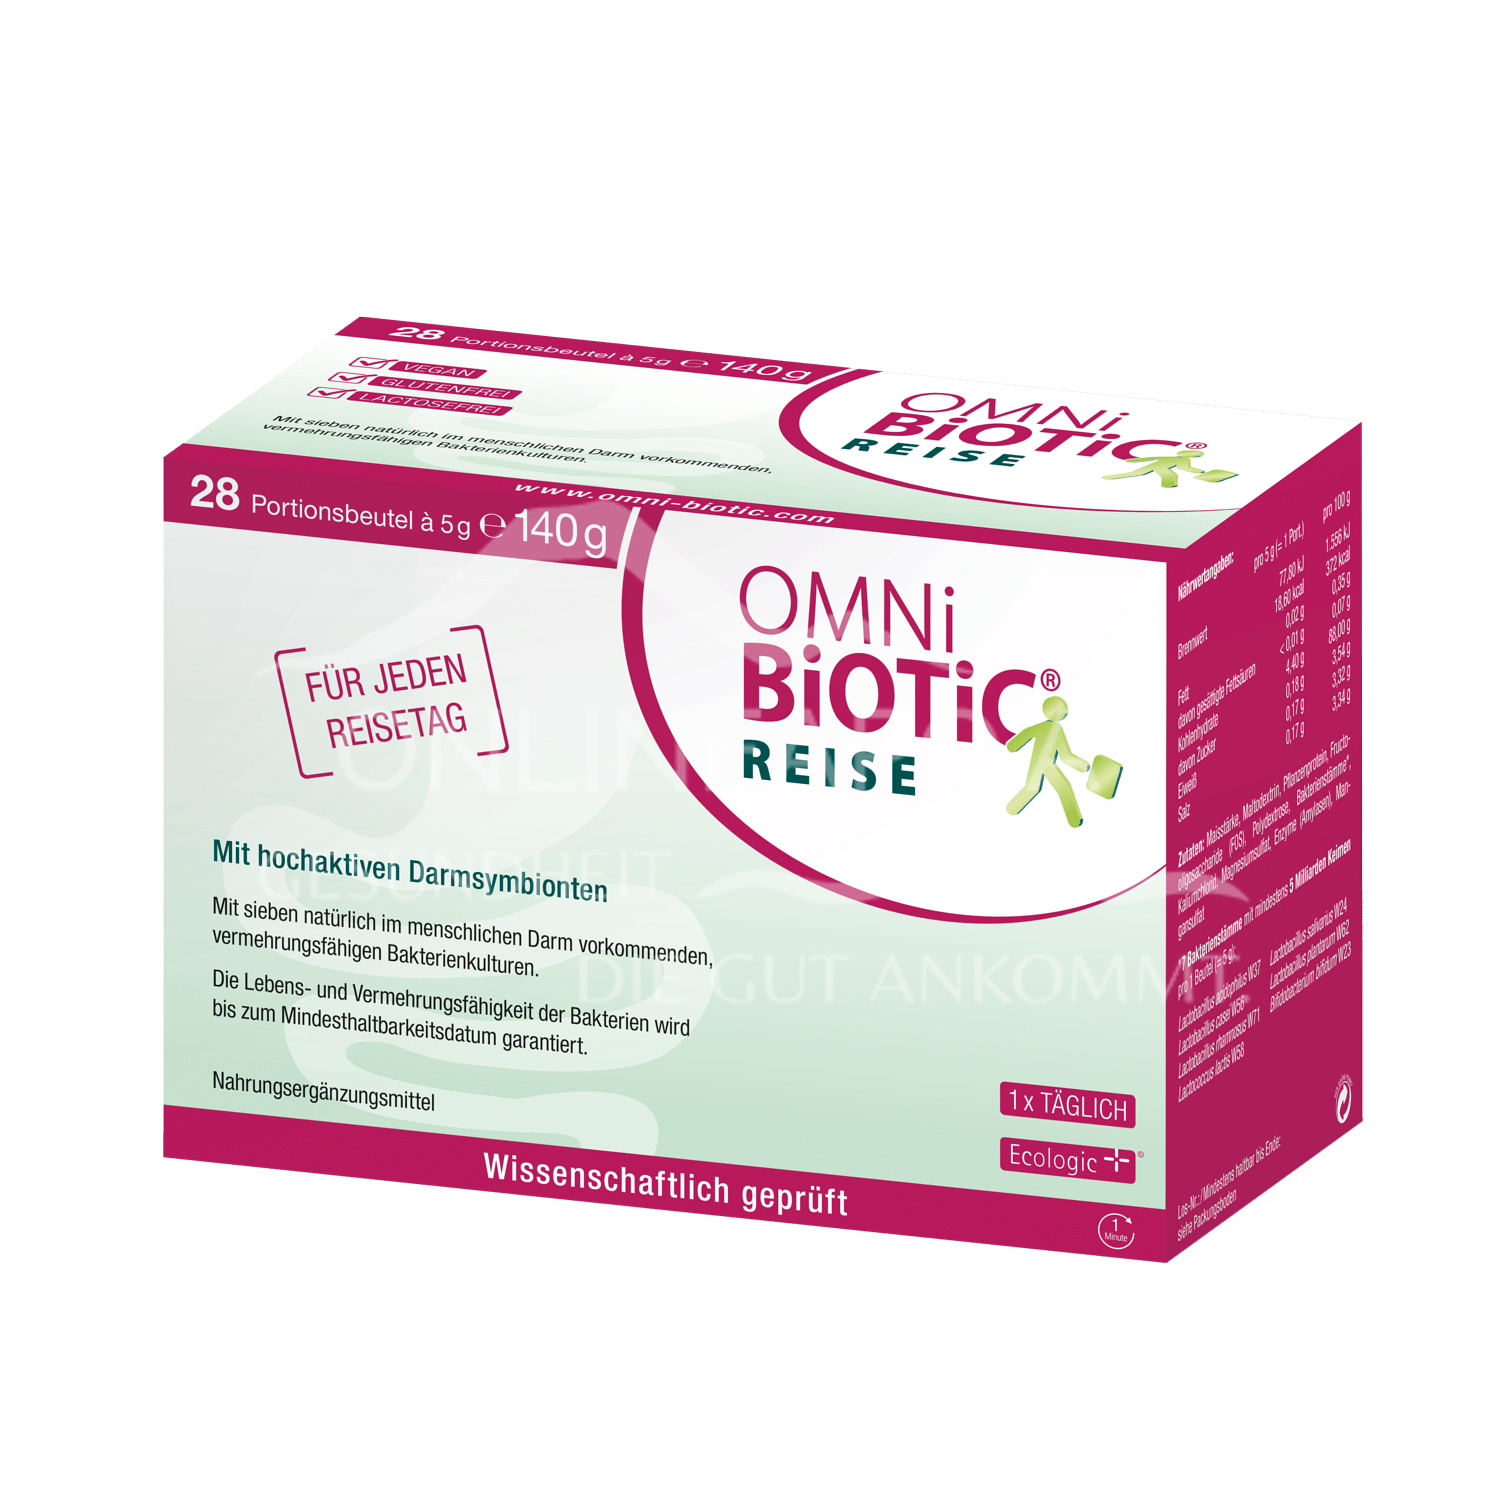 OMNi-BiOTiC® REISE 5g